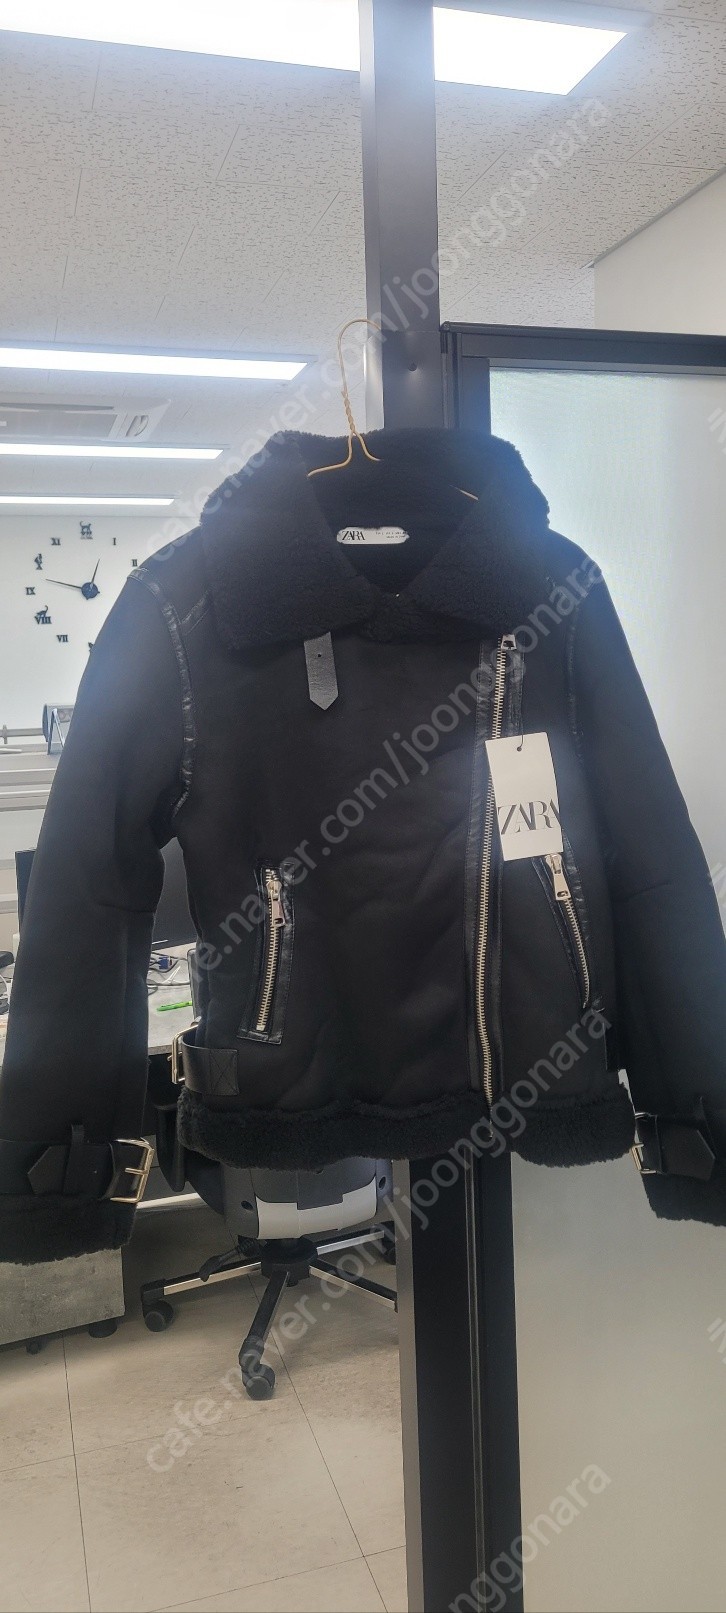 ZARA 자라 여성 스웨이드 무스탕 퍼자켓 벨트 루즈핏 재킷 택포 4만원